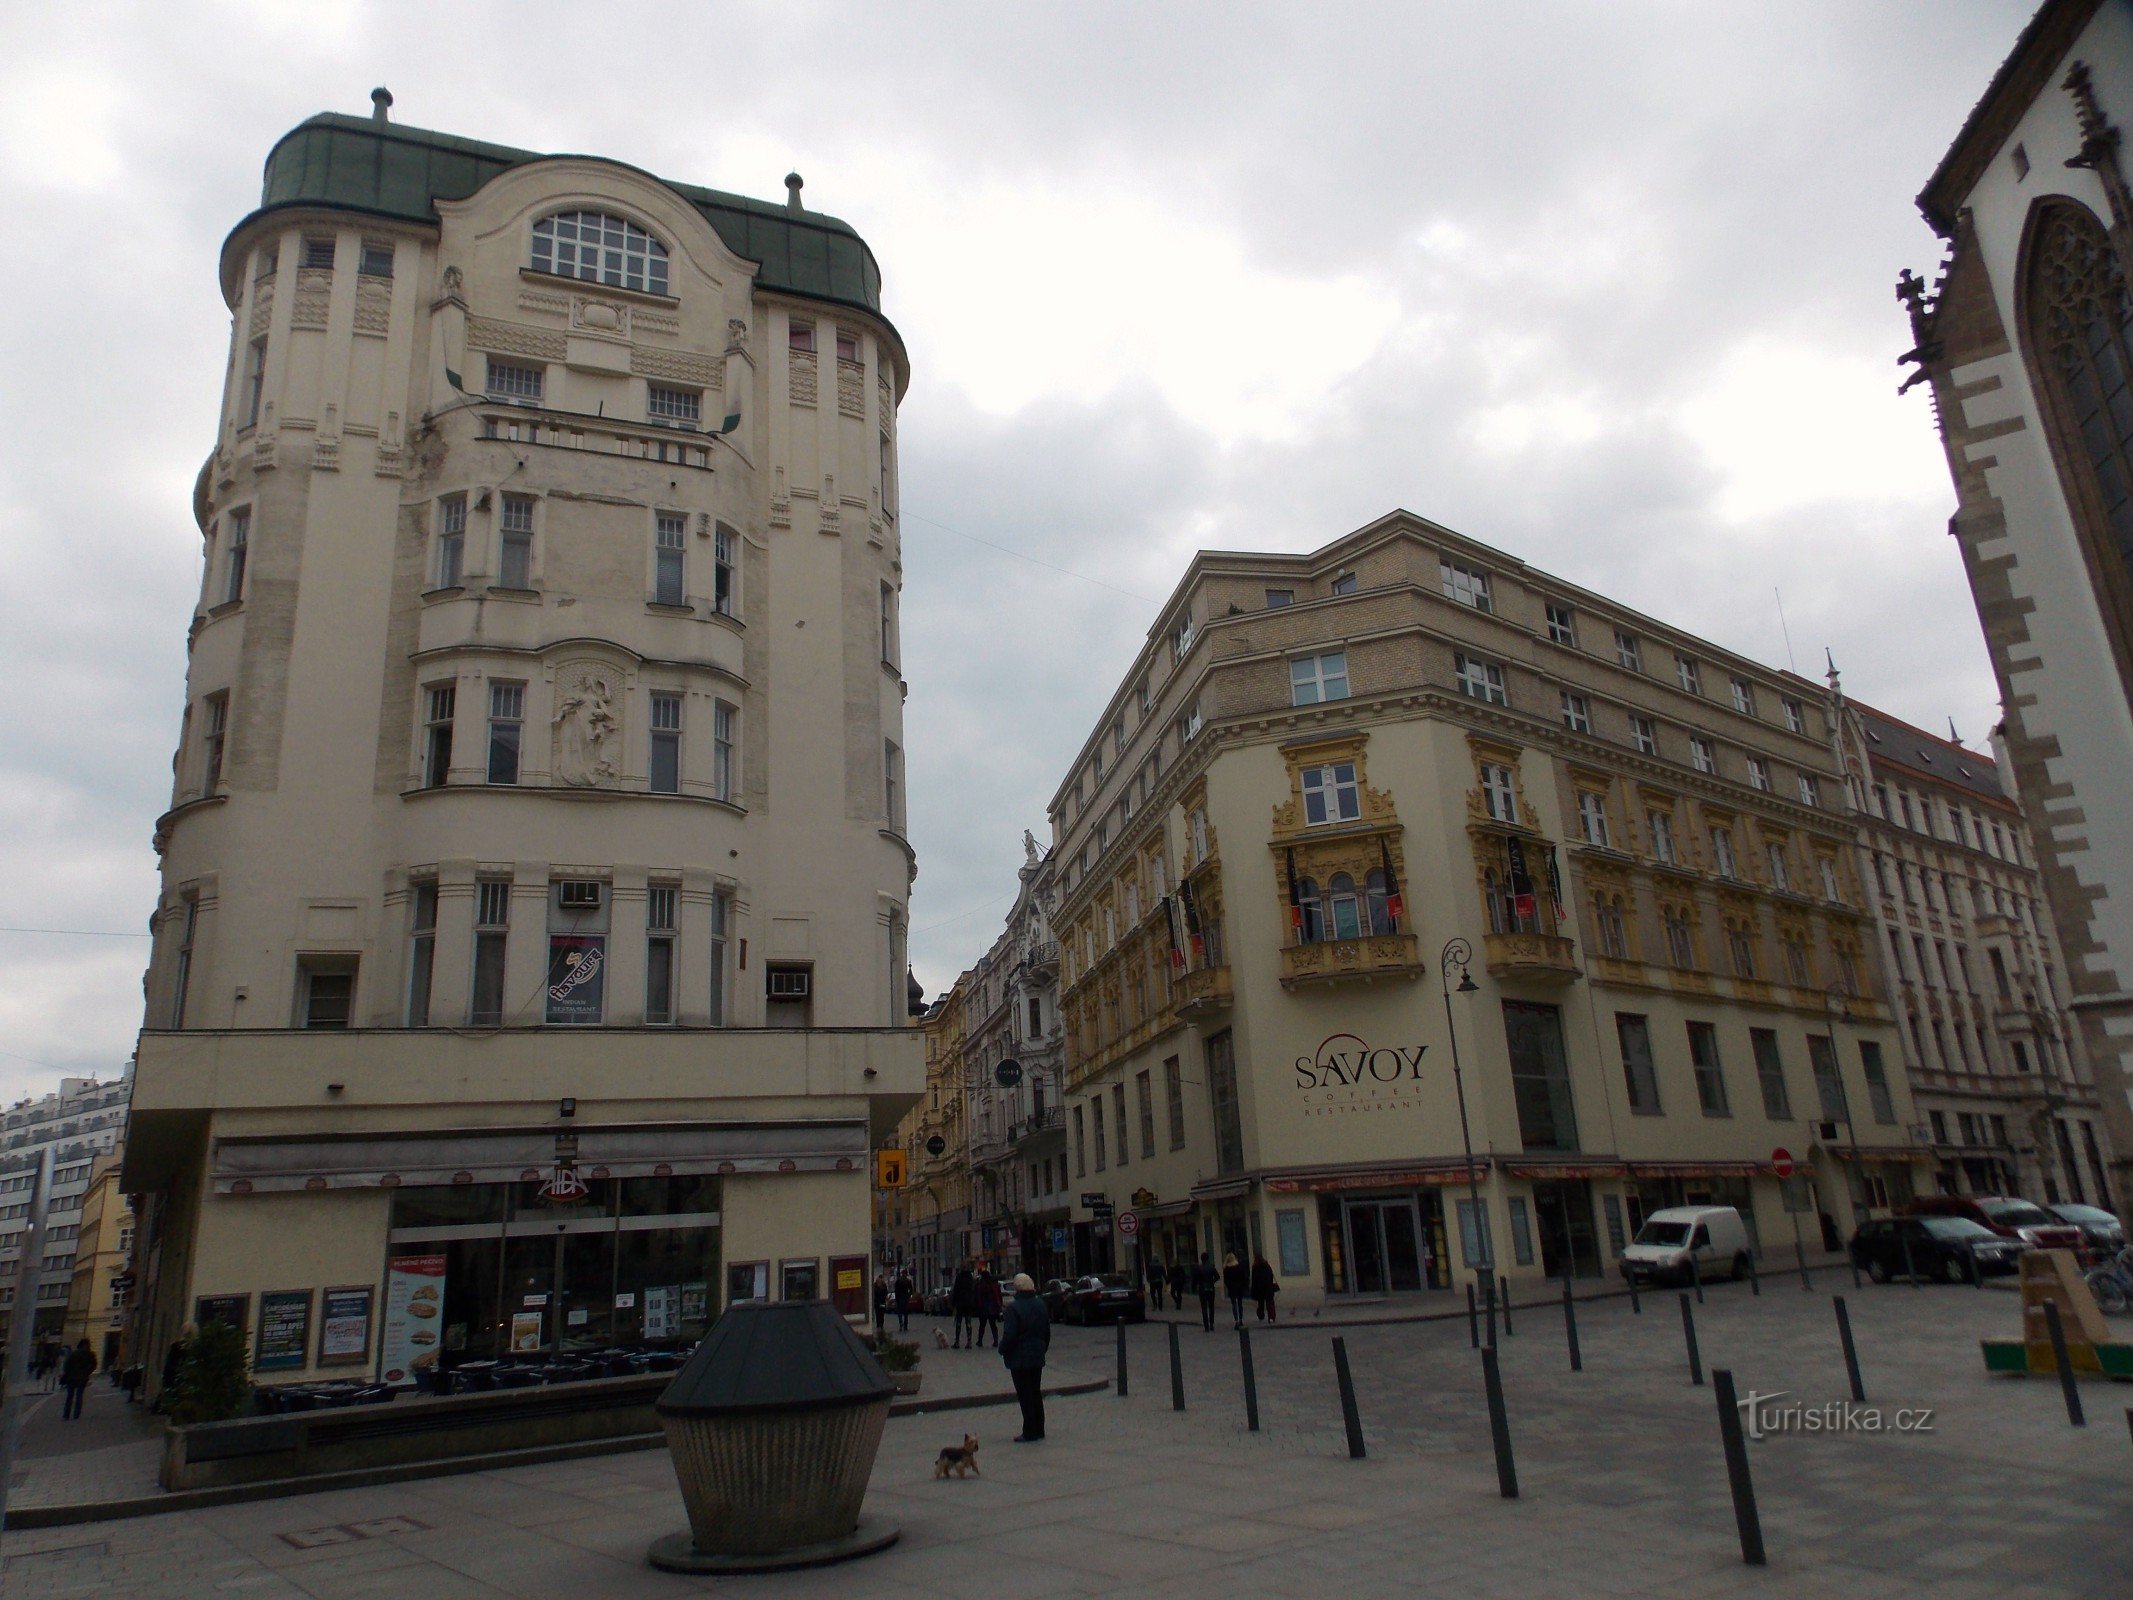 Ngang qua Jakubské náměstí ở Brno